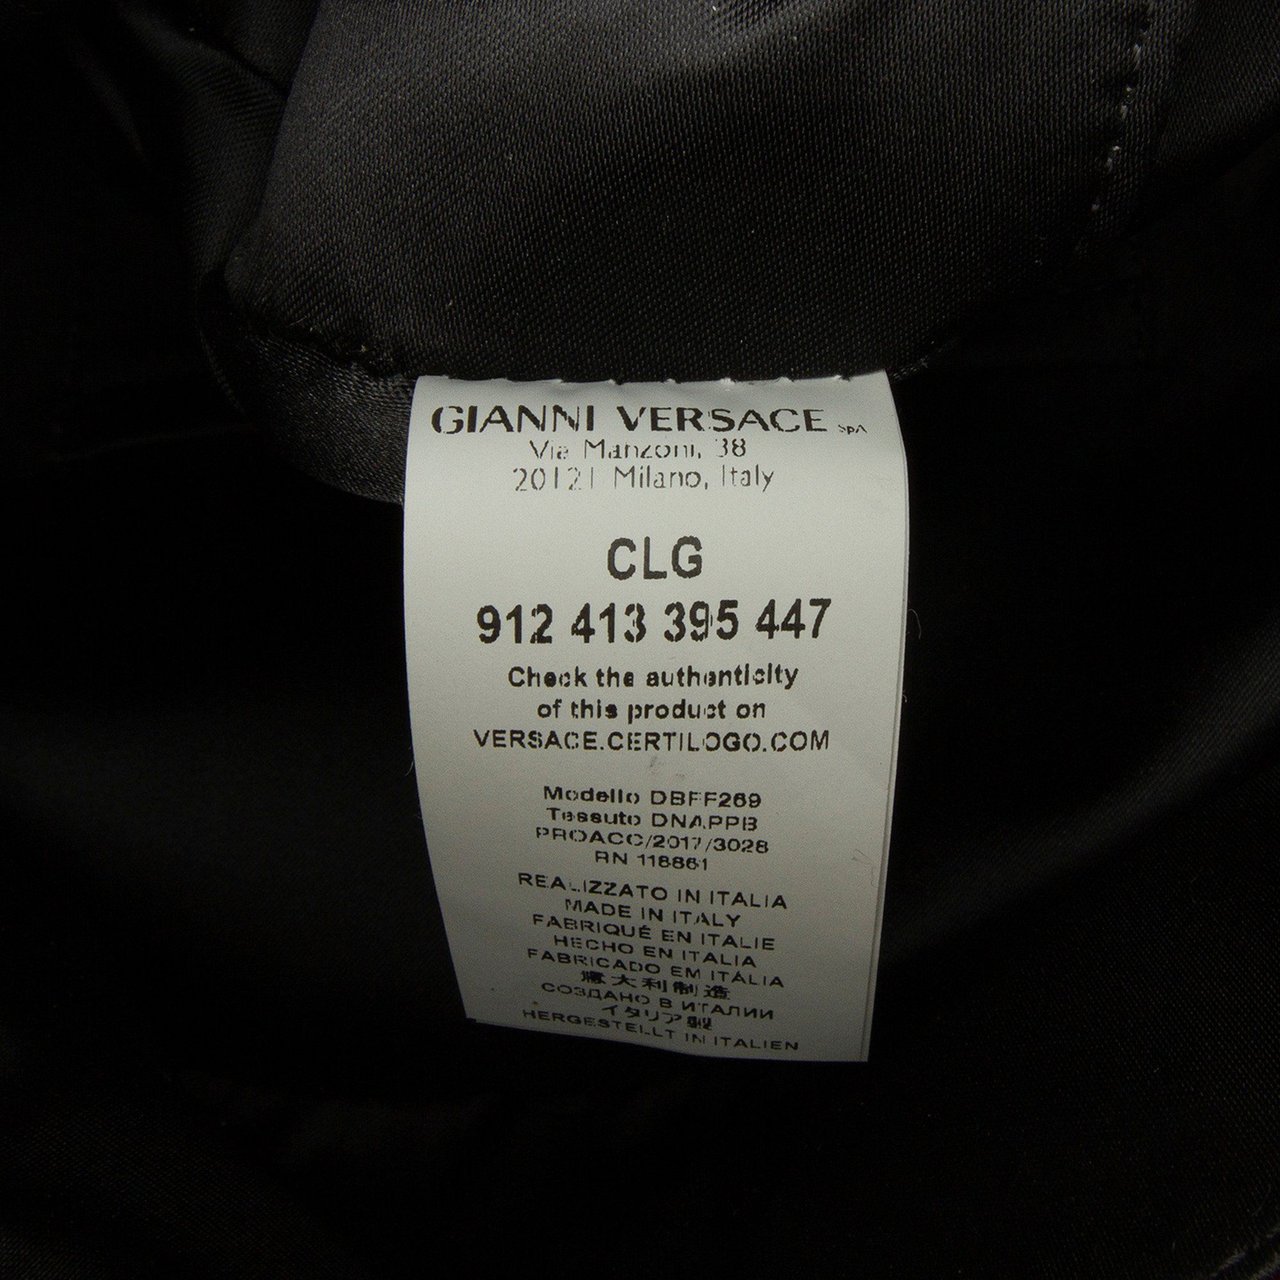 Versace Medusa Studded Backpack Rood